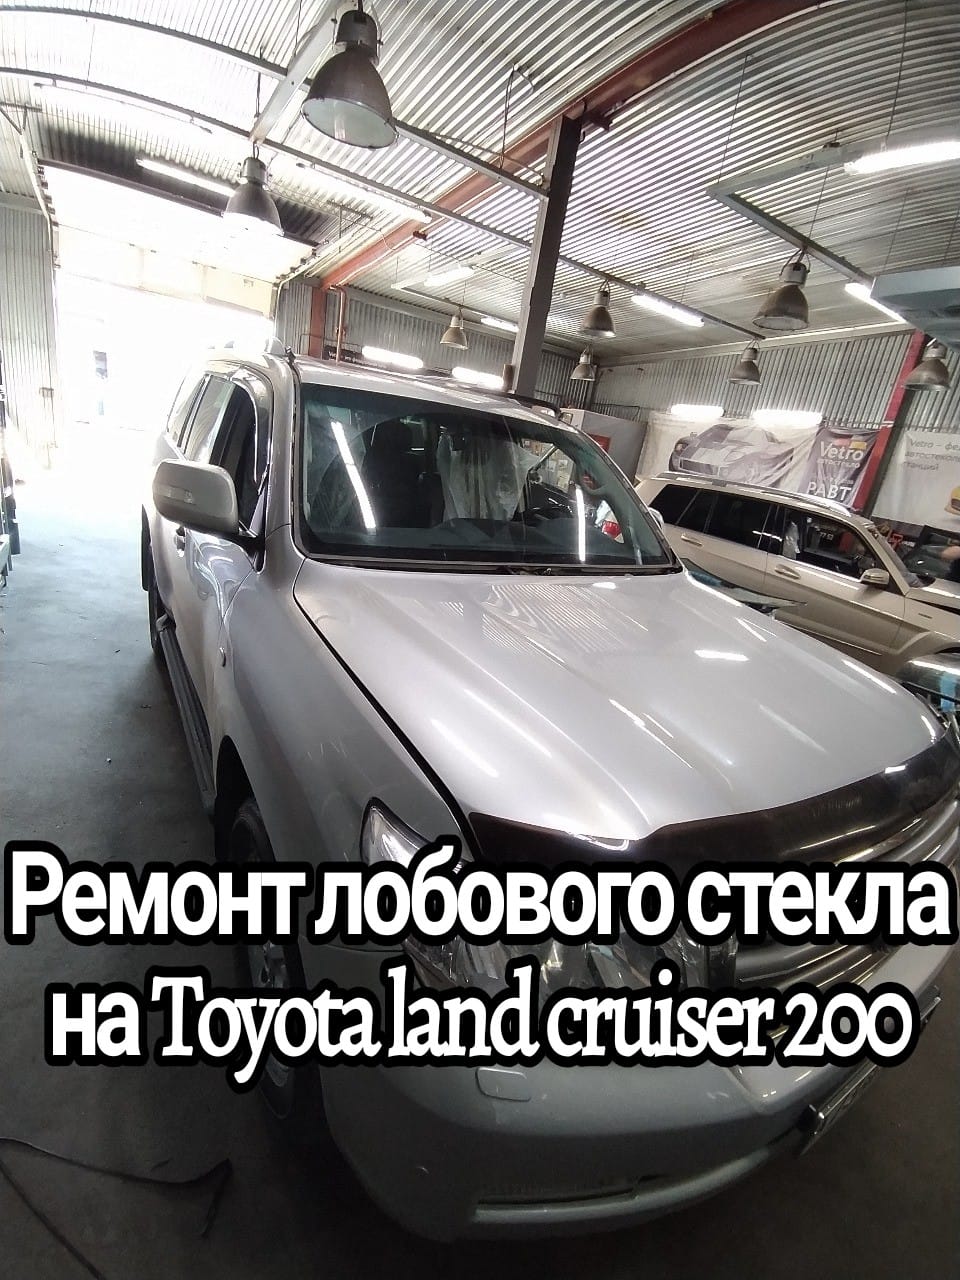 Ремонт лобового стекла на Toyota land cruiser 200